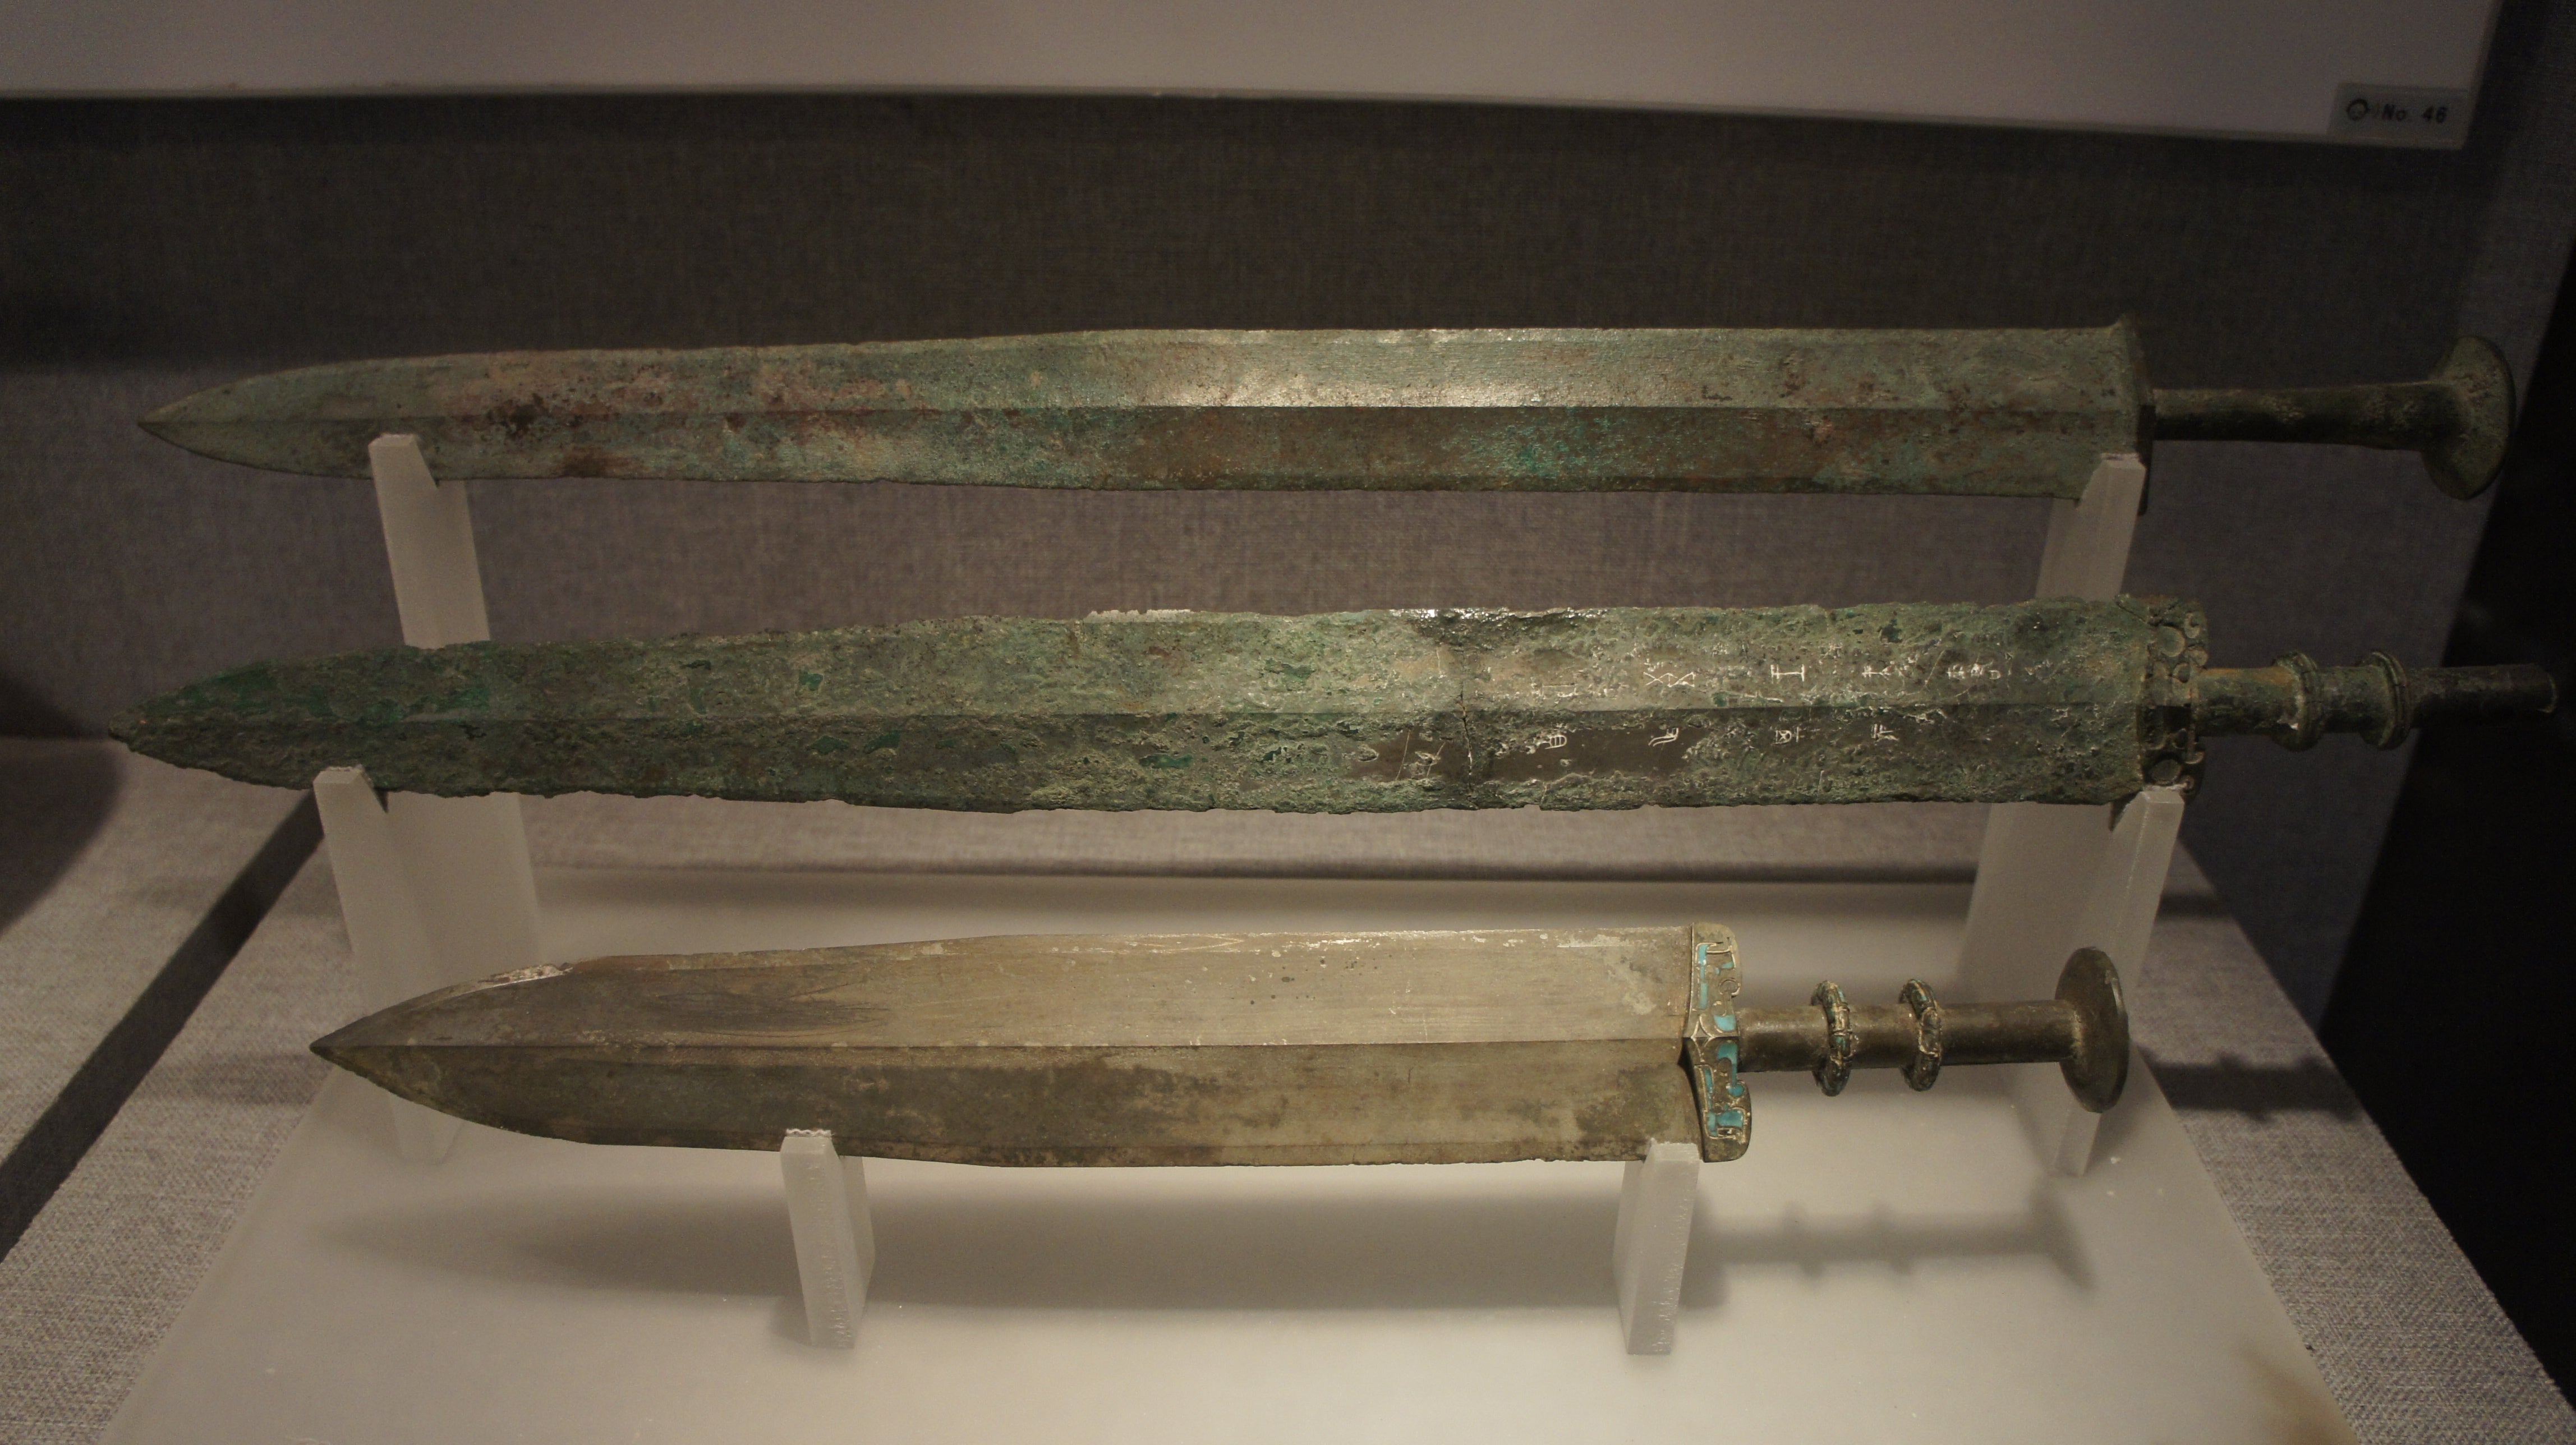 Erforschung traditioneller chinesischer Schwerter